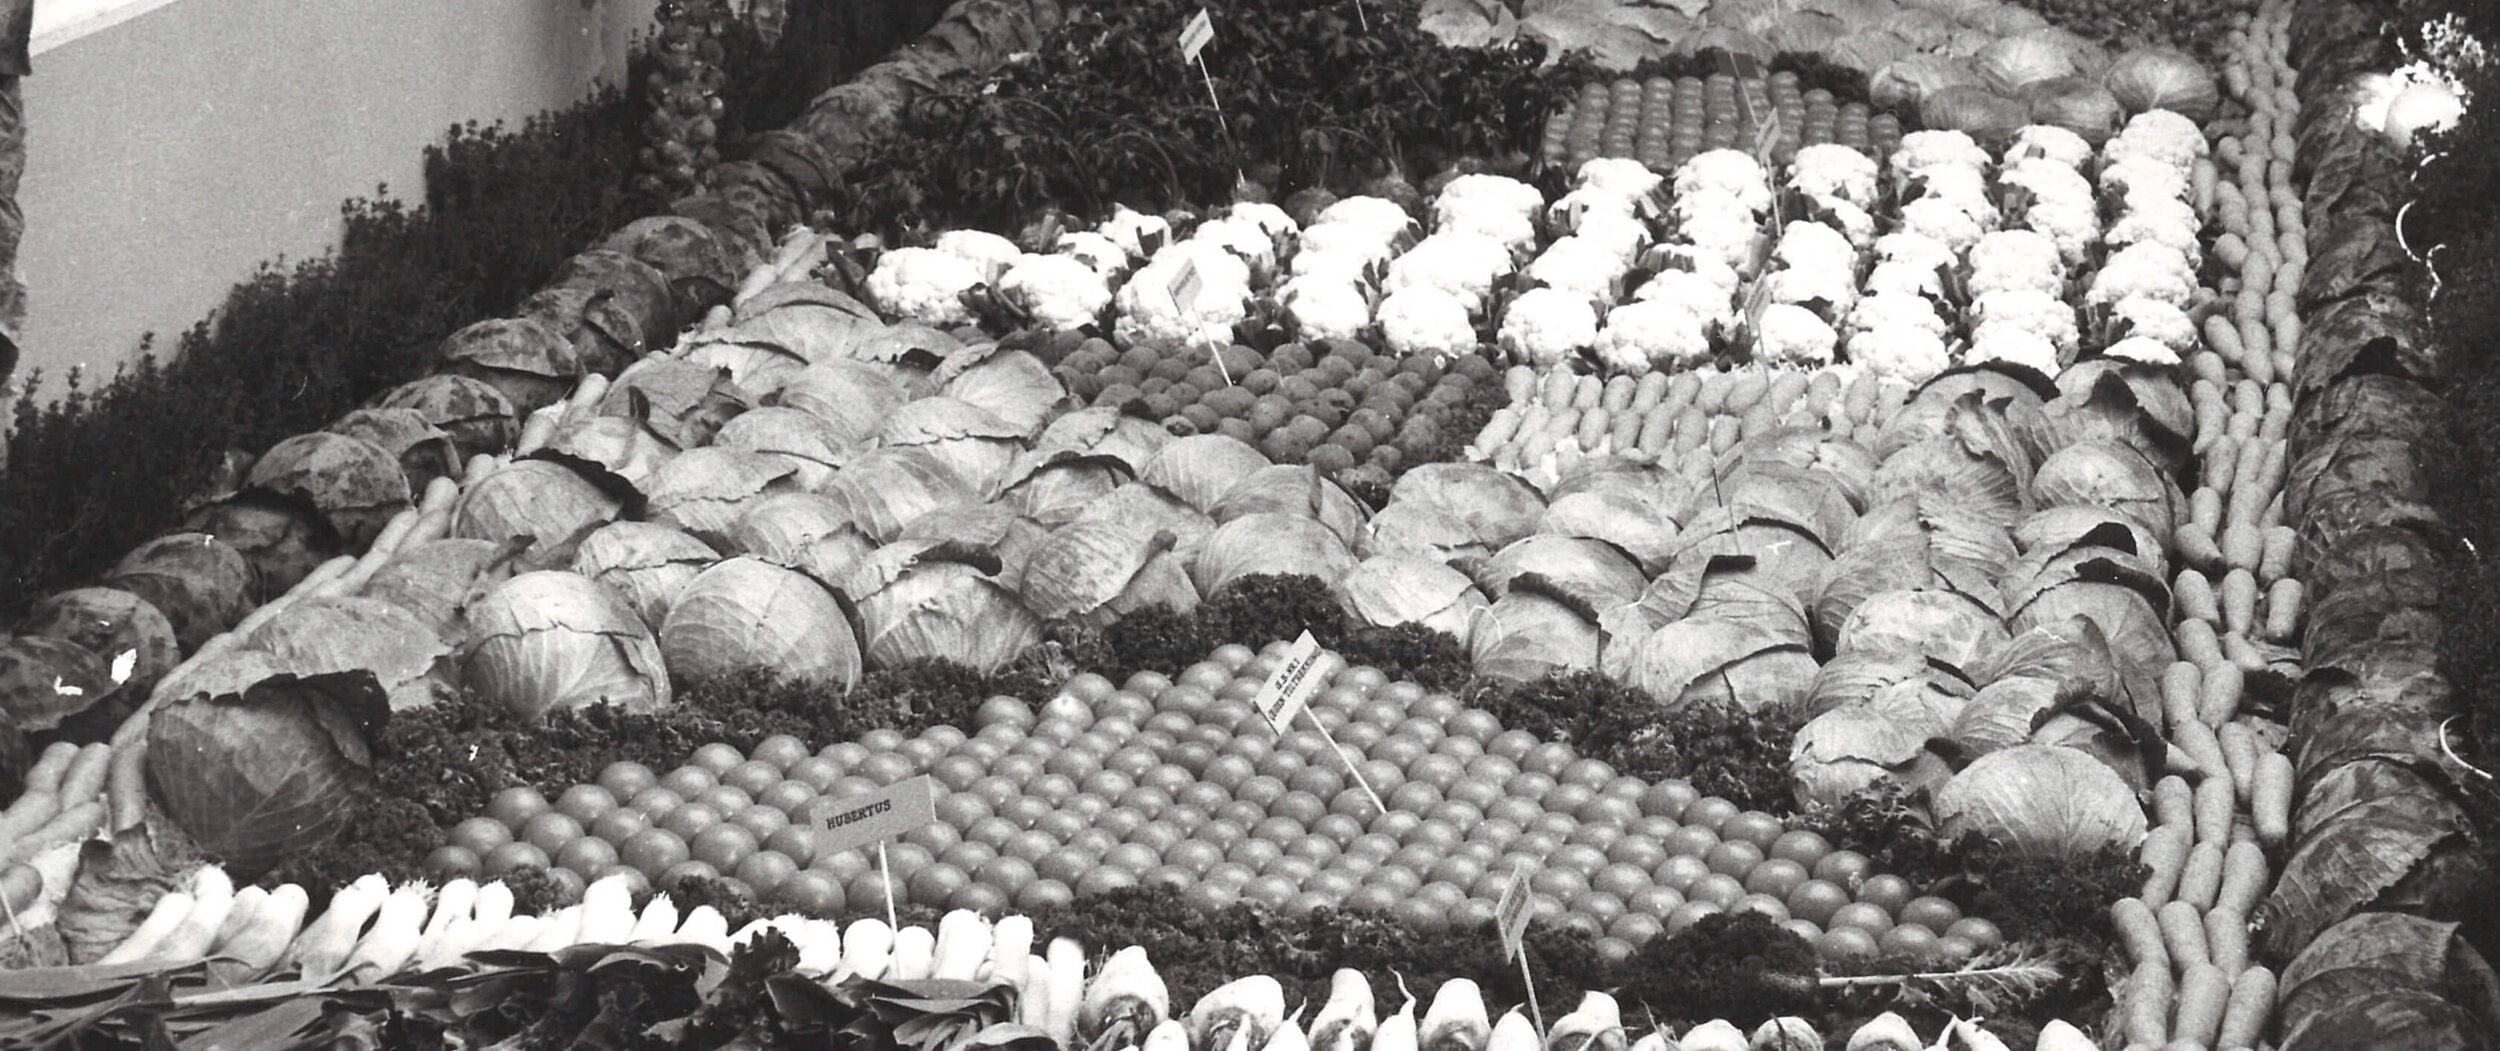 Grønnsaksutstilling Ekebergsletta 1959.jpg